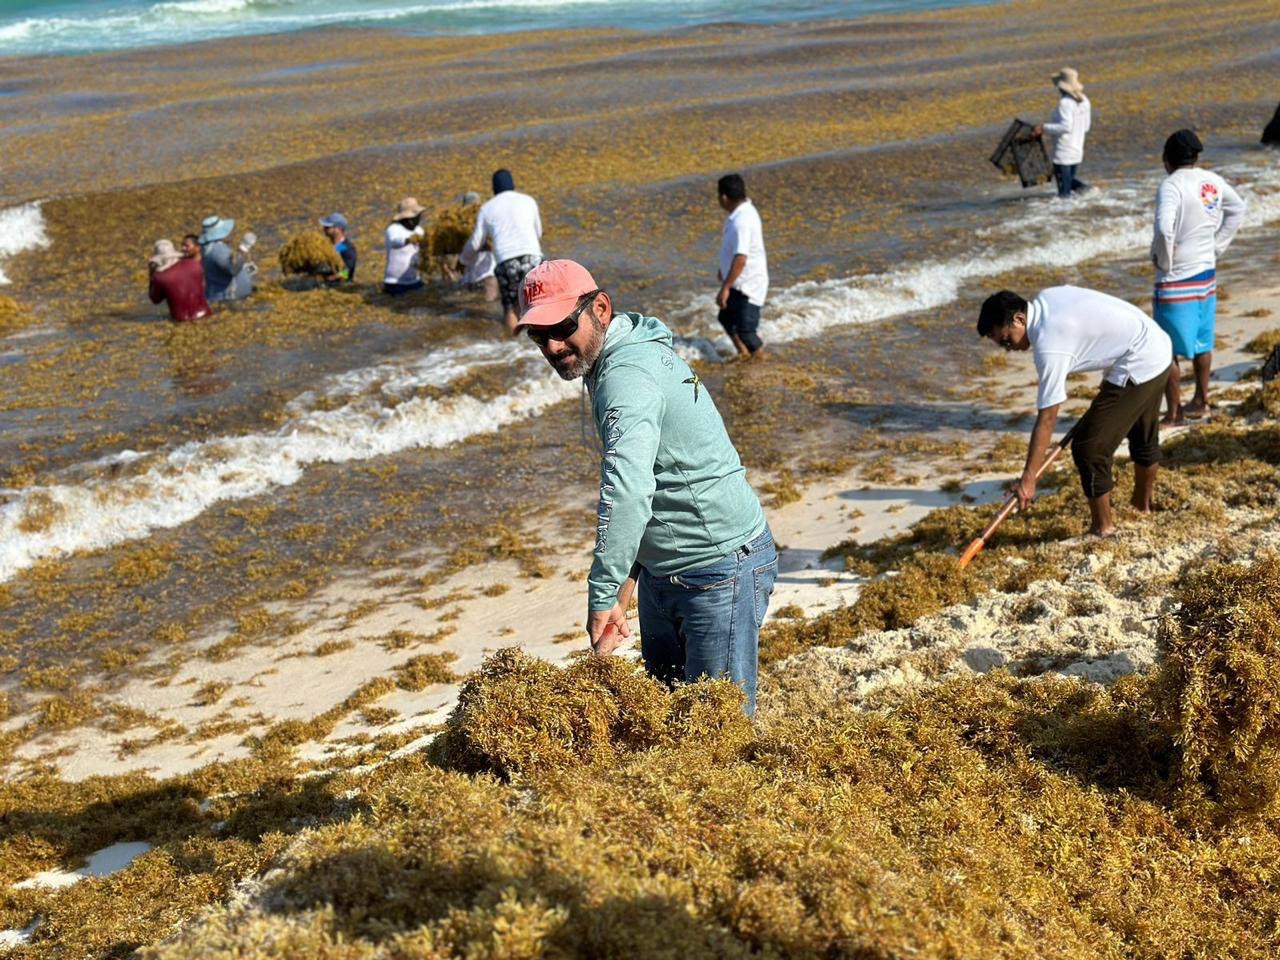 Intensifican recolección de sargazo ante recale masivo en “Playa Delfines”